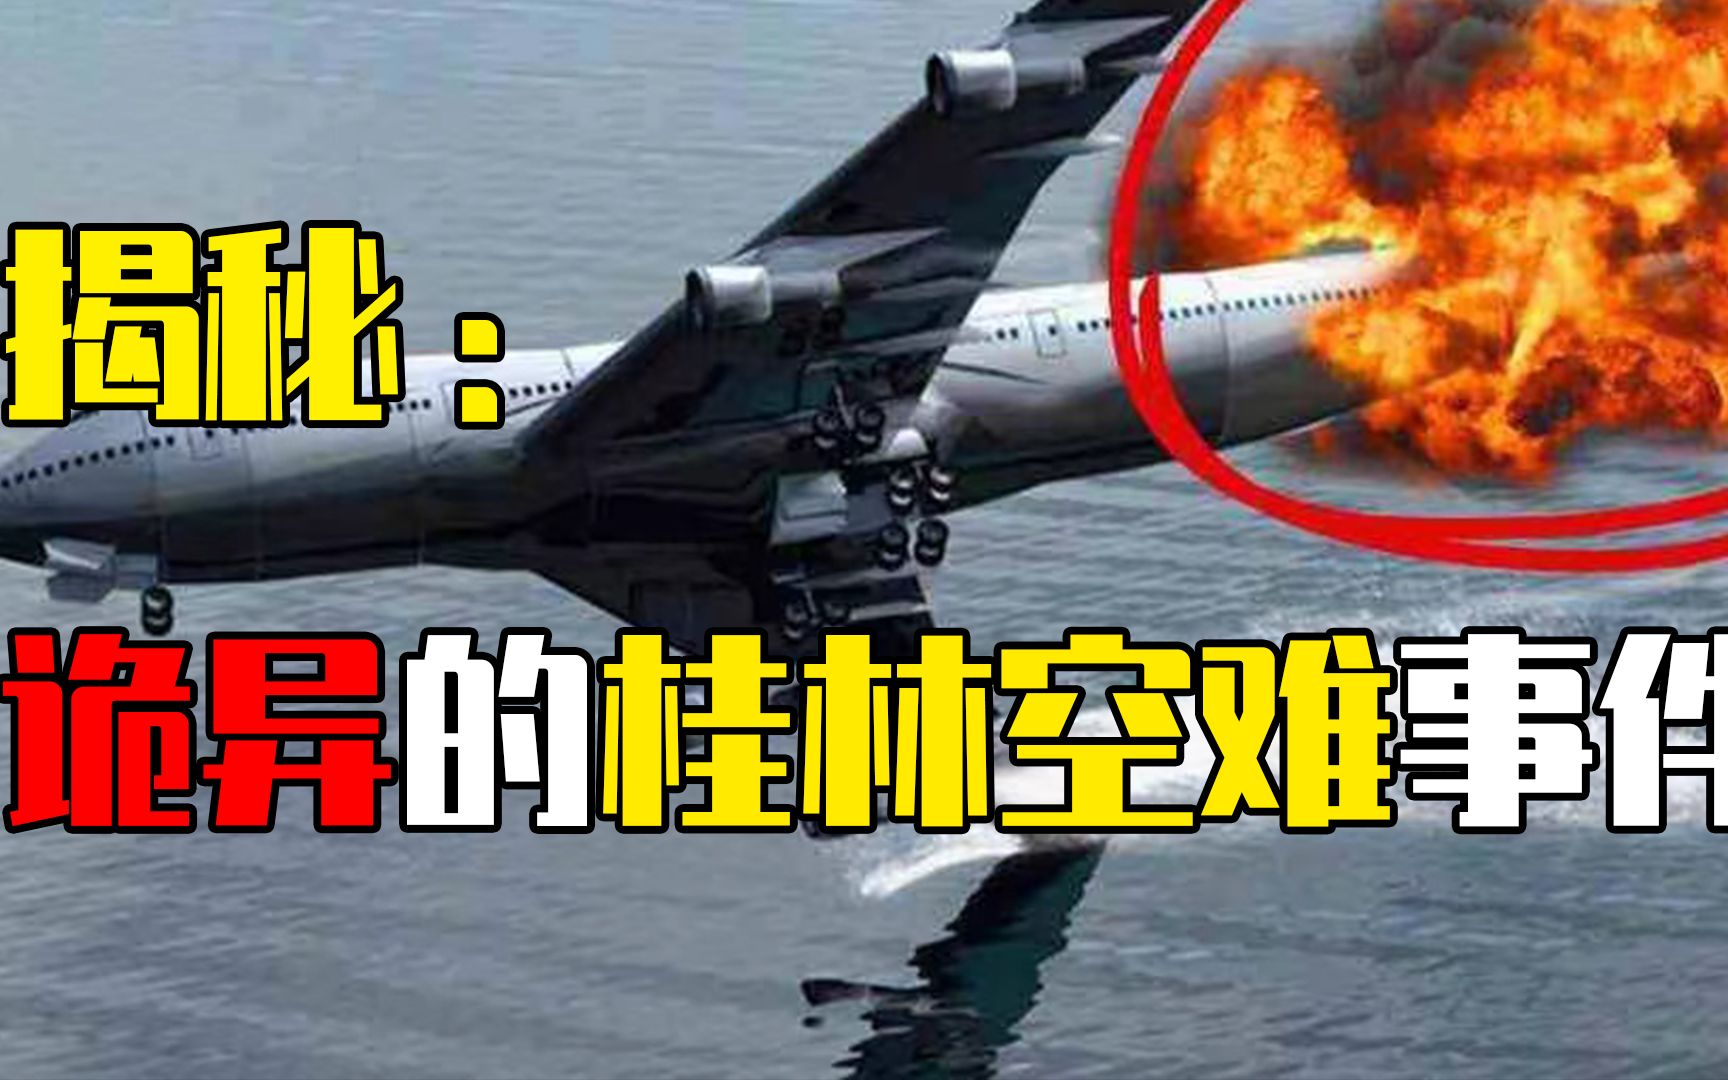 中国广西空难图片